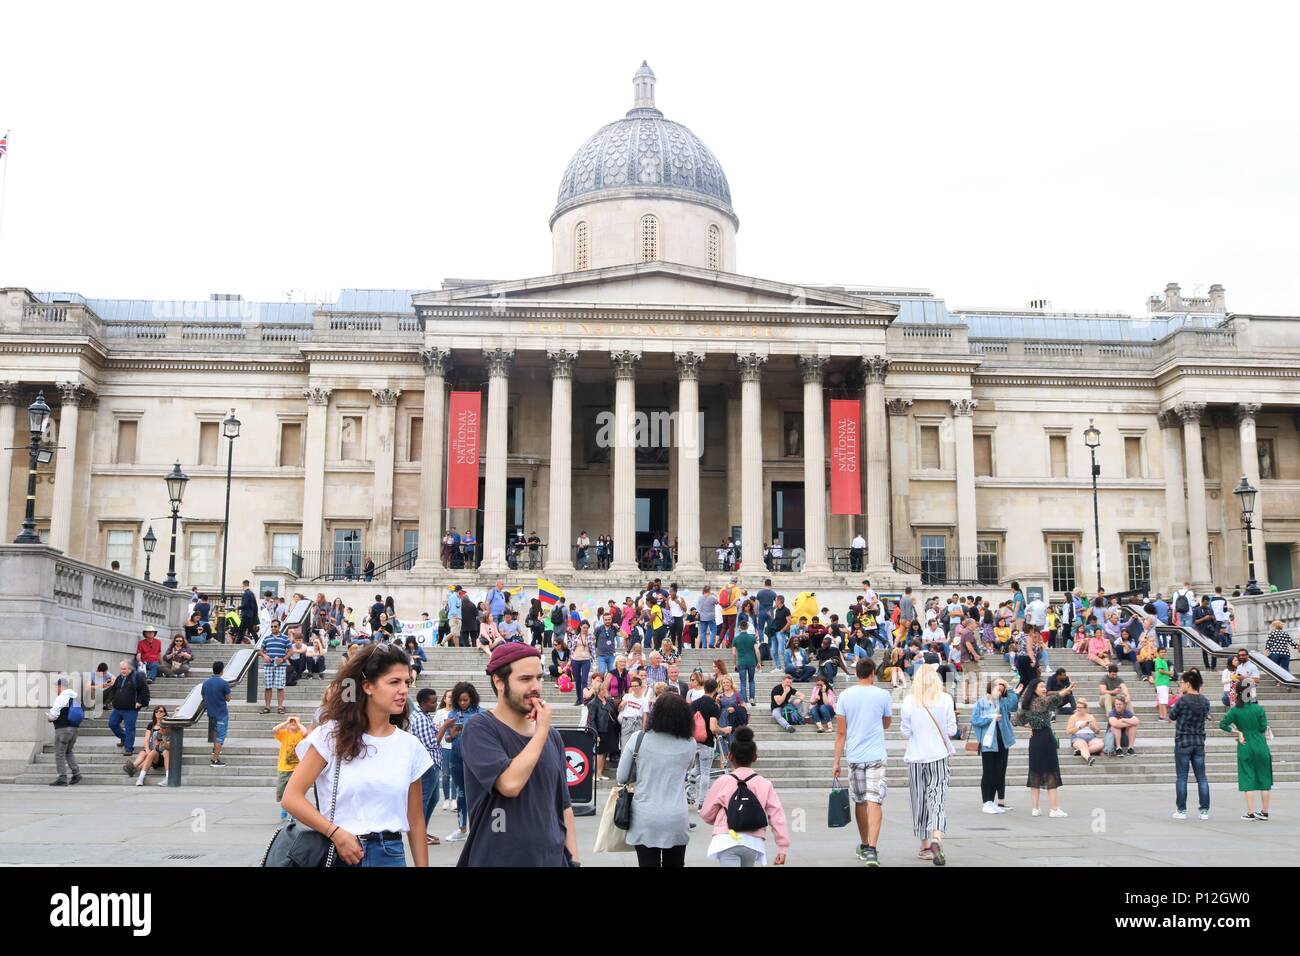 People enjoying the sunny weather at Trafalgar Square, London, UK Stock Photo